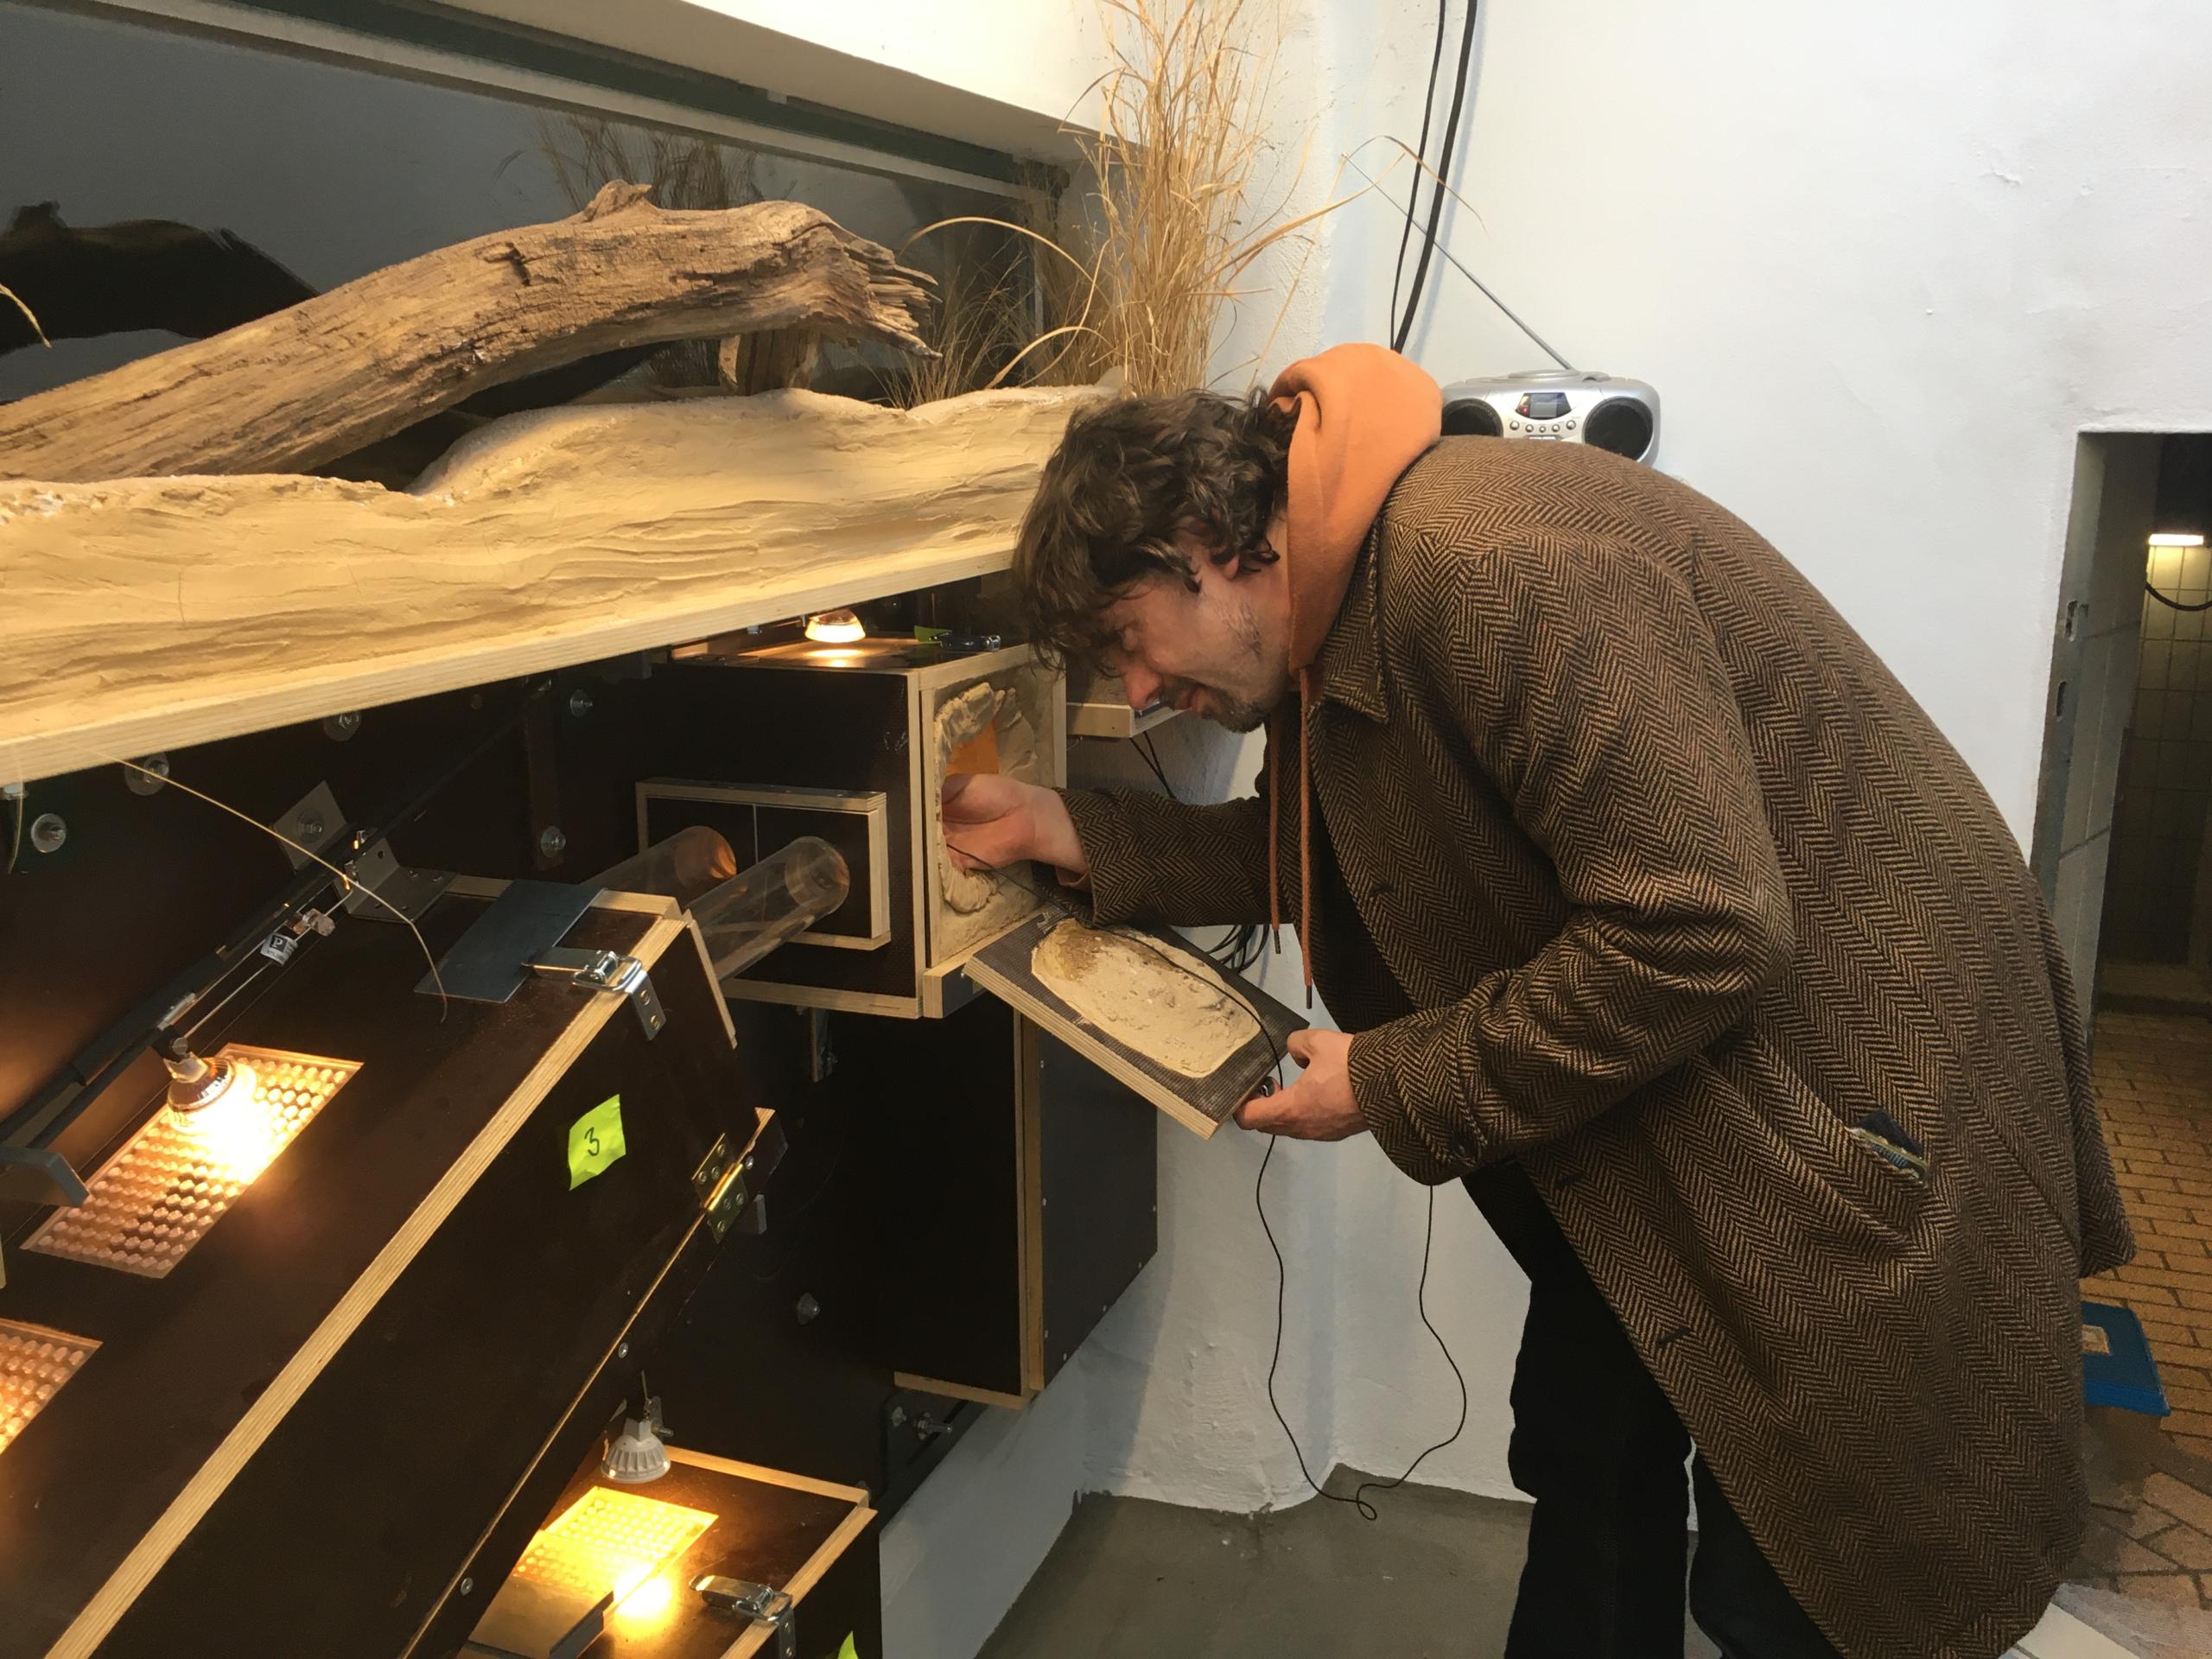 Kurator Johannes Köhler kontrolliert eine der Nacktmullboxen und macht Tonaufnahmen der Tiere. Am Deckel ist zu sehen, dass auch die Rückseiten der Boxen gestaltet sind, um die Illusion von Besucherseite aus zu vervollkommnen. 